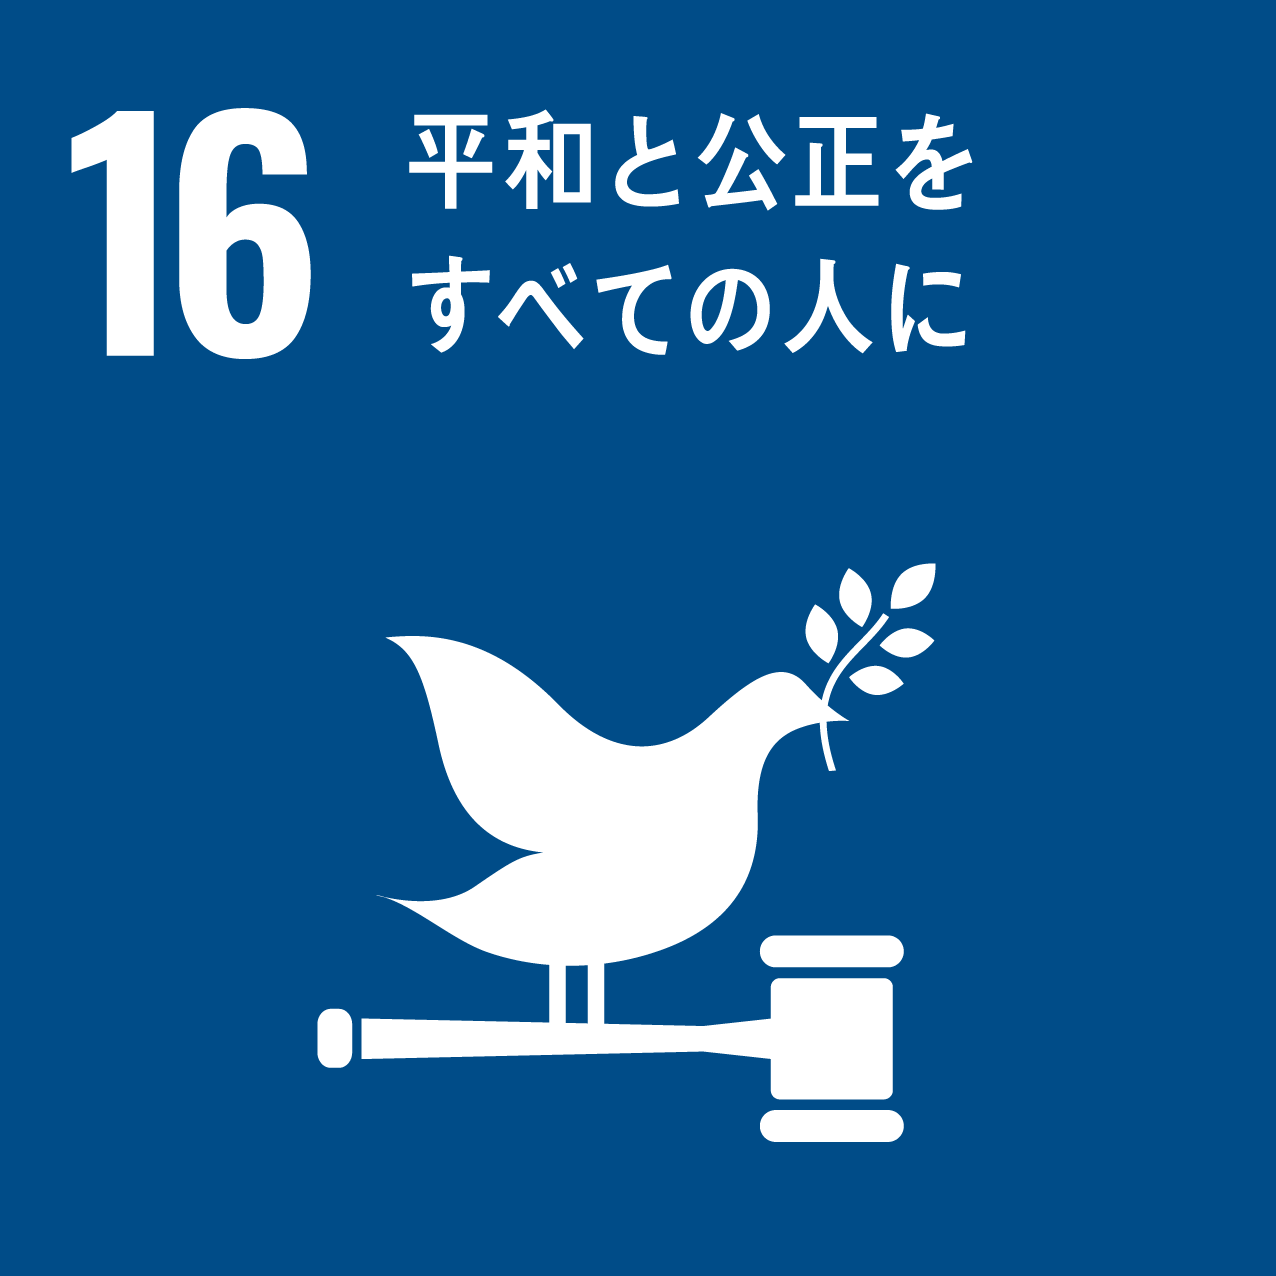 日南町と日南町産業振興センターが目指す、SDGs16のロゴ